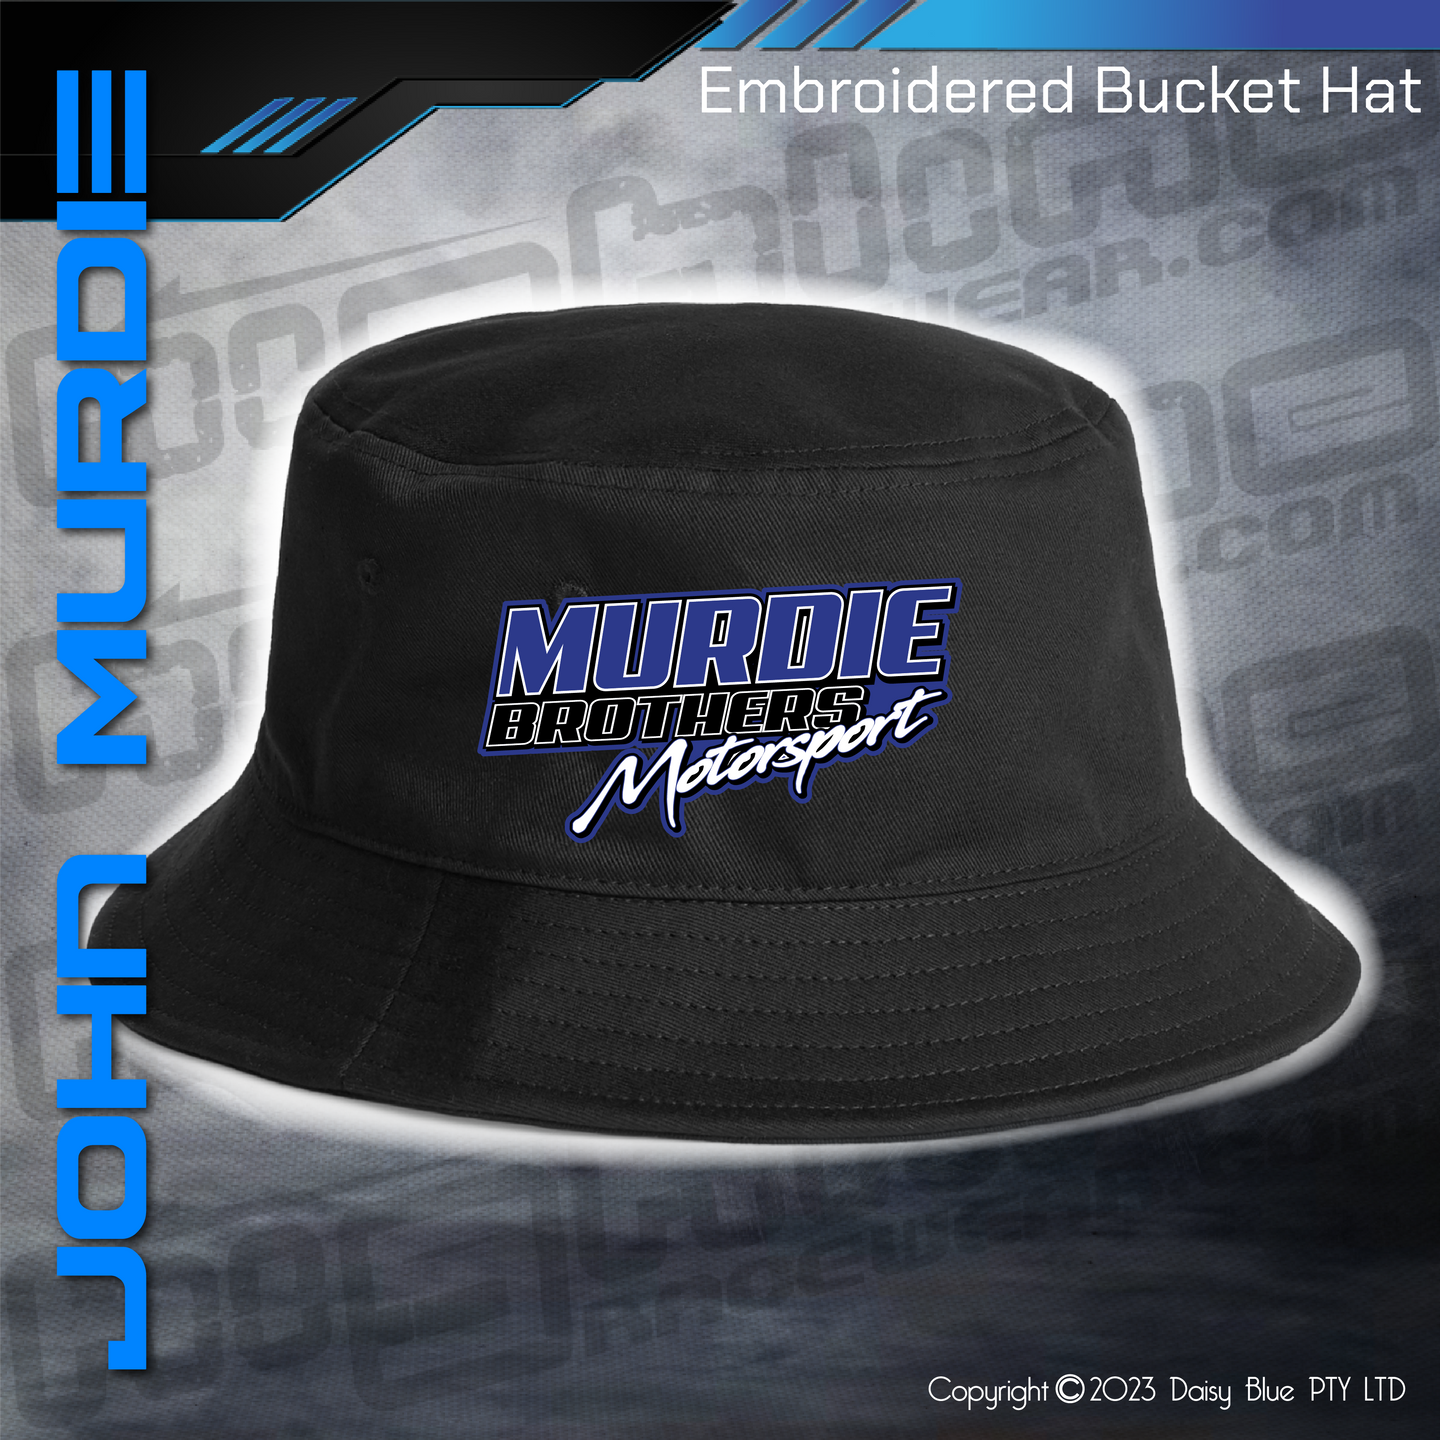 Embroidered Bucket Hat - Murdie Motorsport